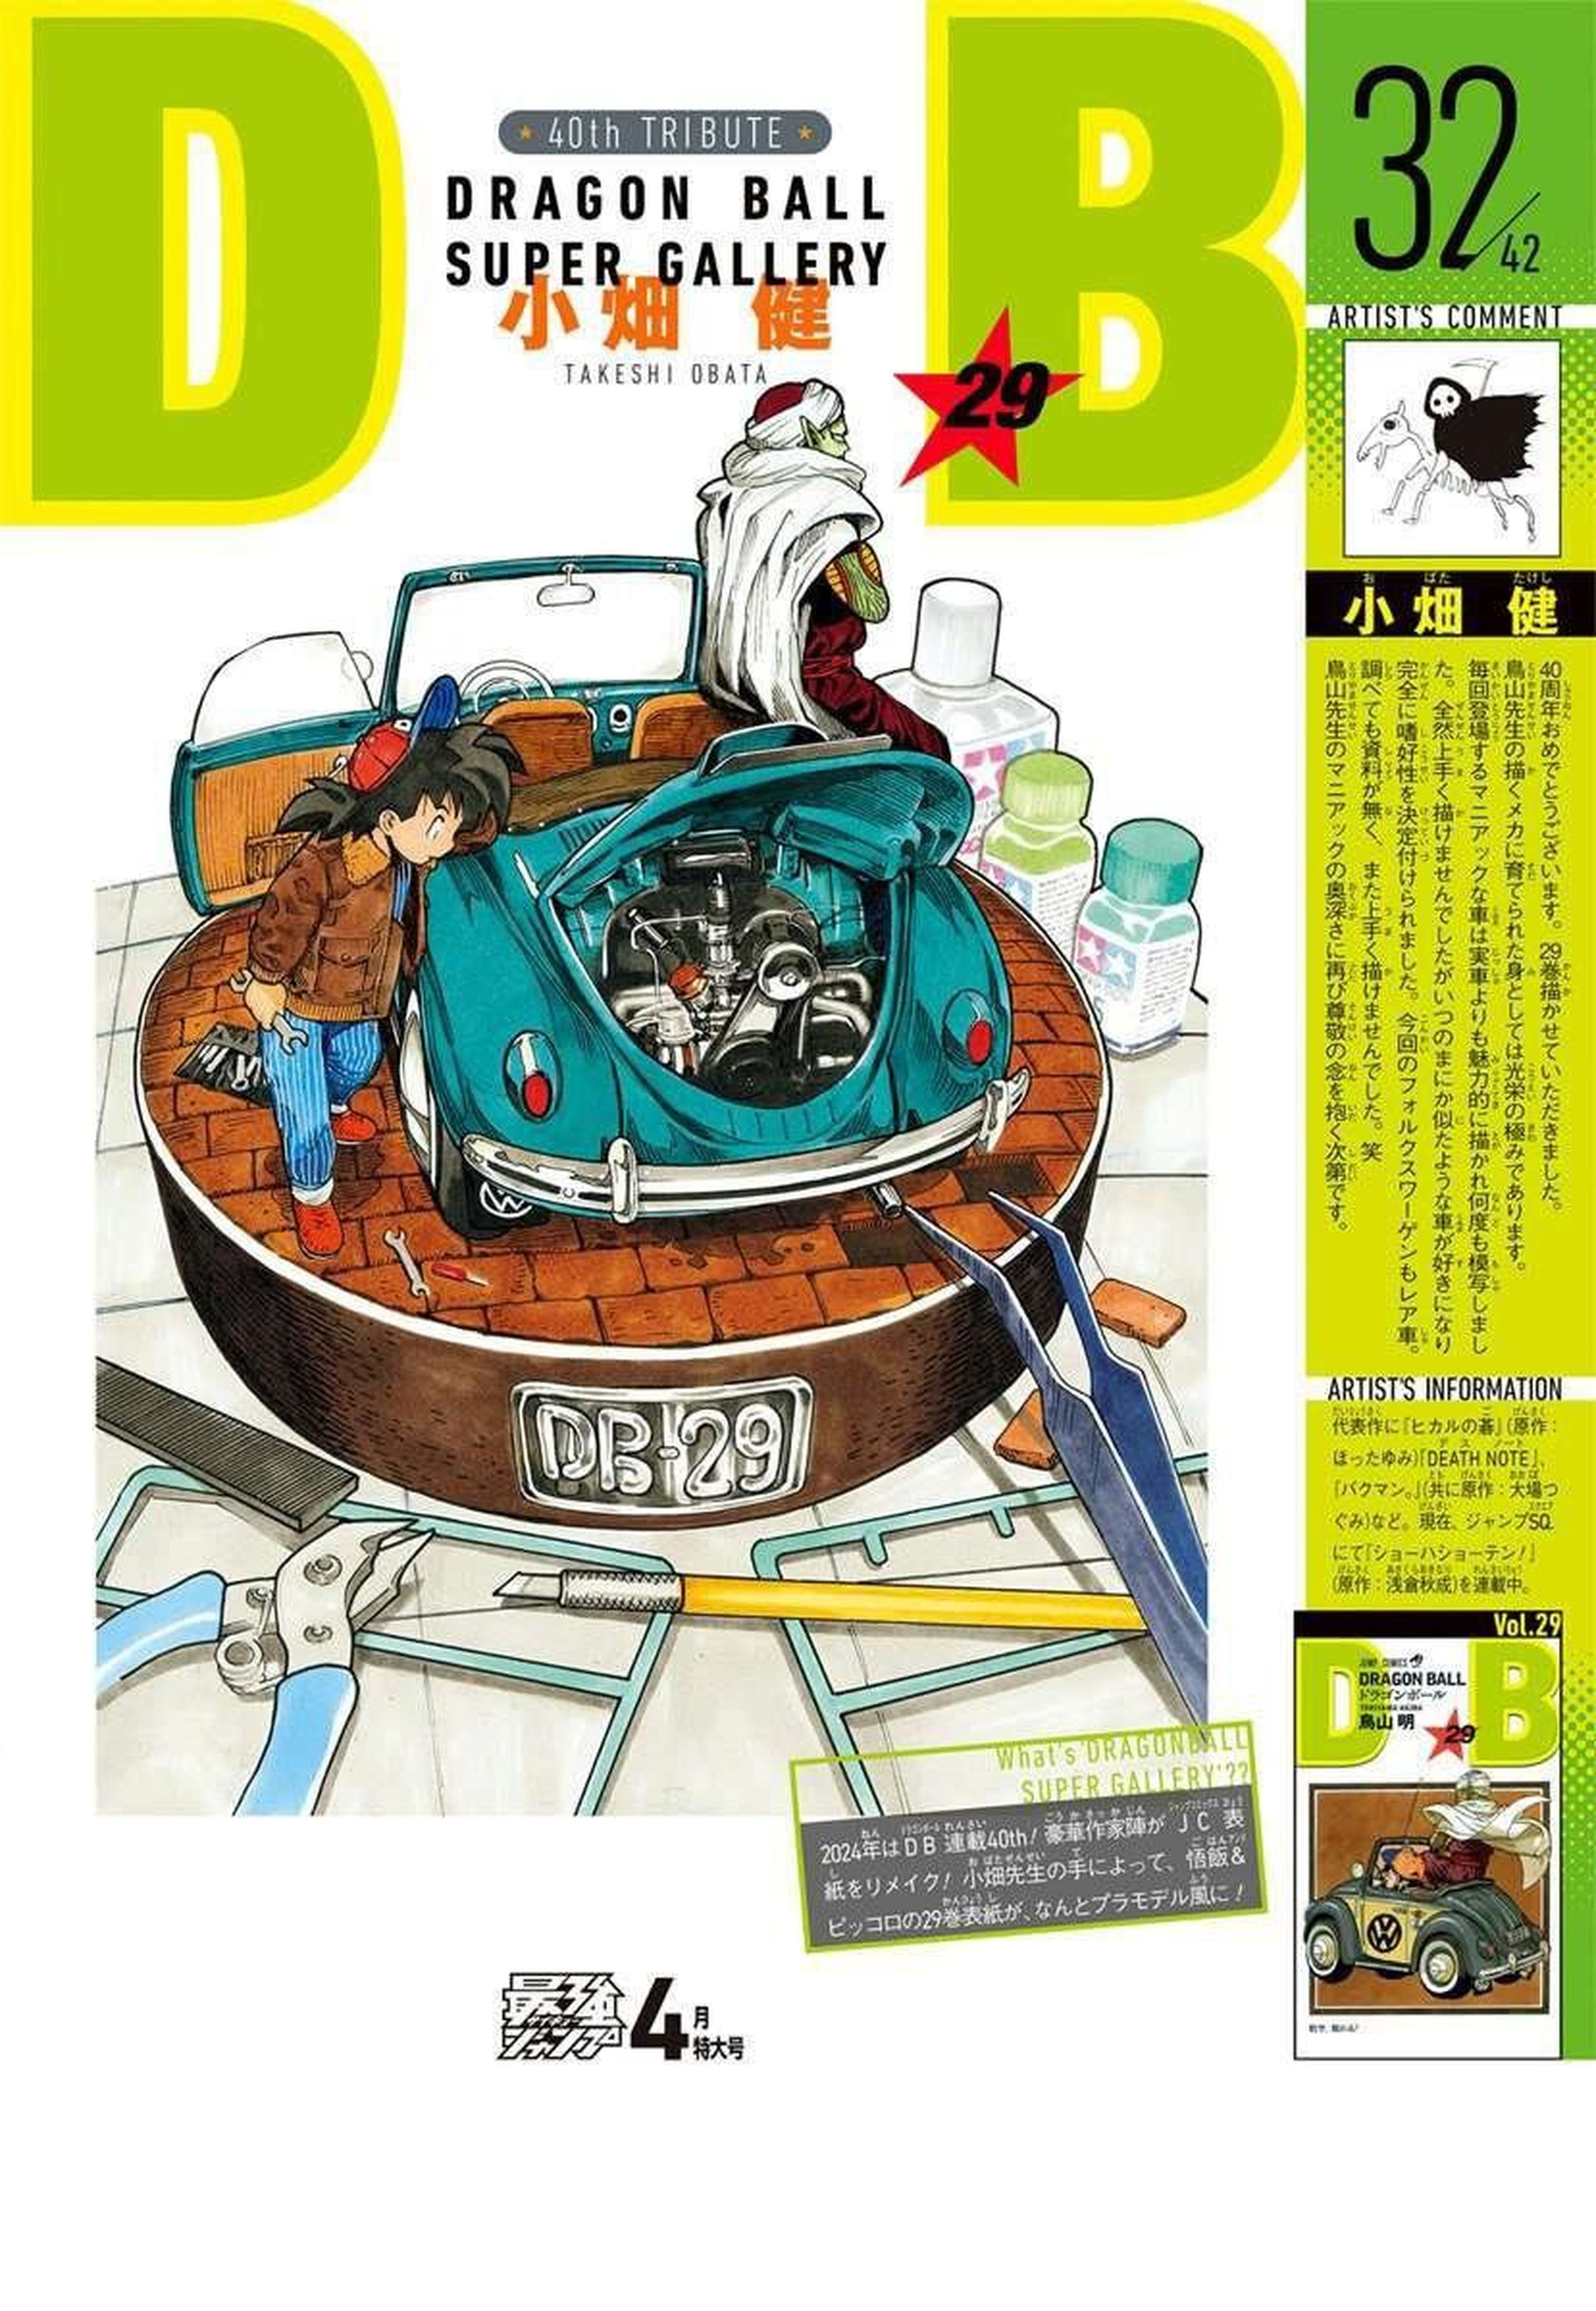 El artista de Death Note, Takeshi Obata, regresa para dibujar una portada de Dragon Ball de Akira Toriyama